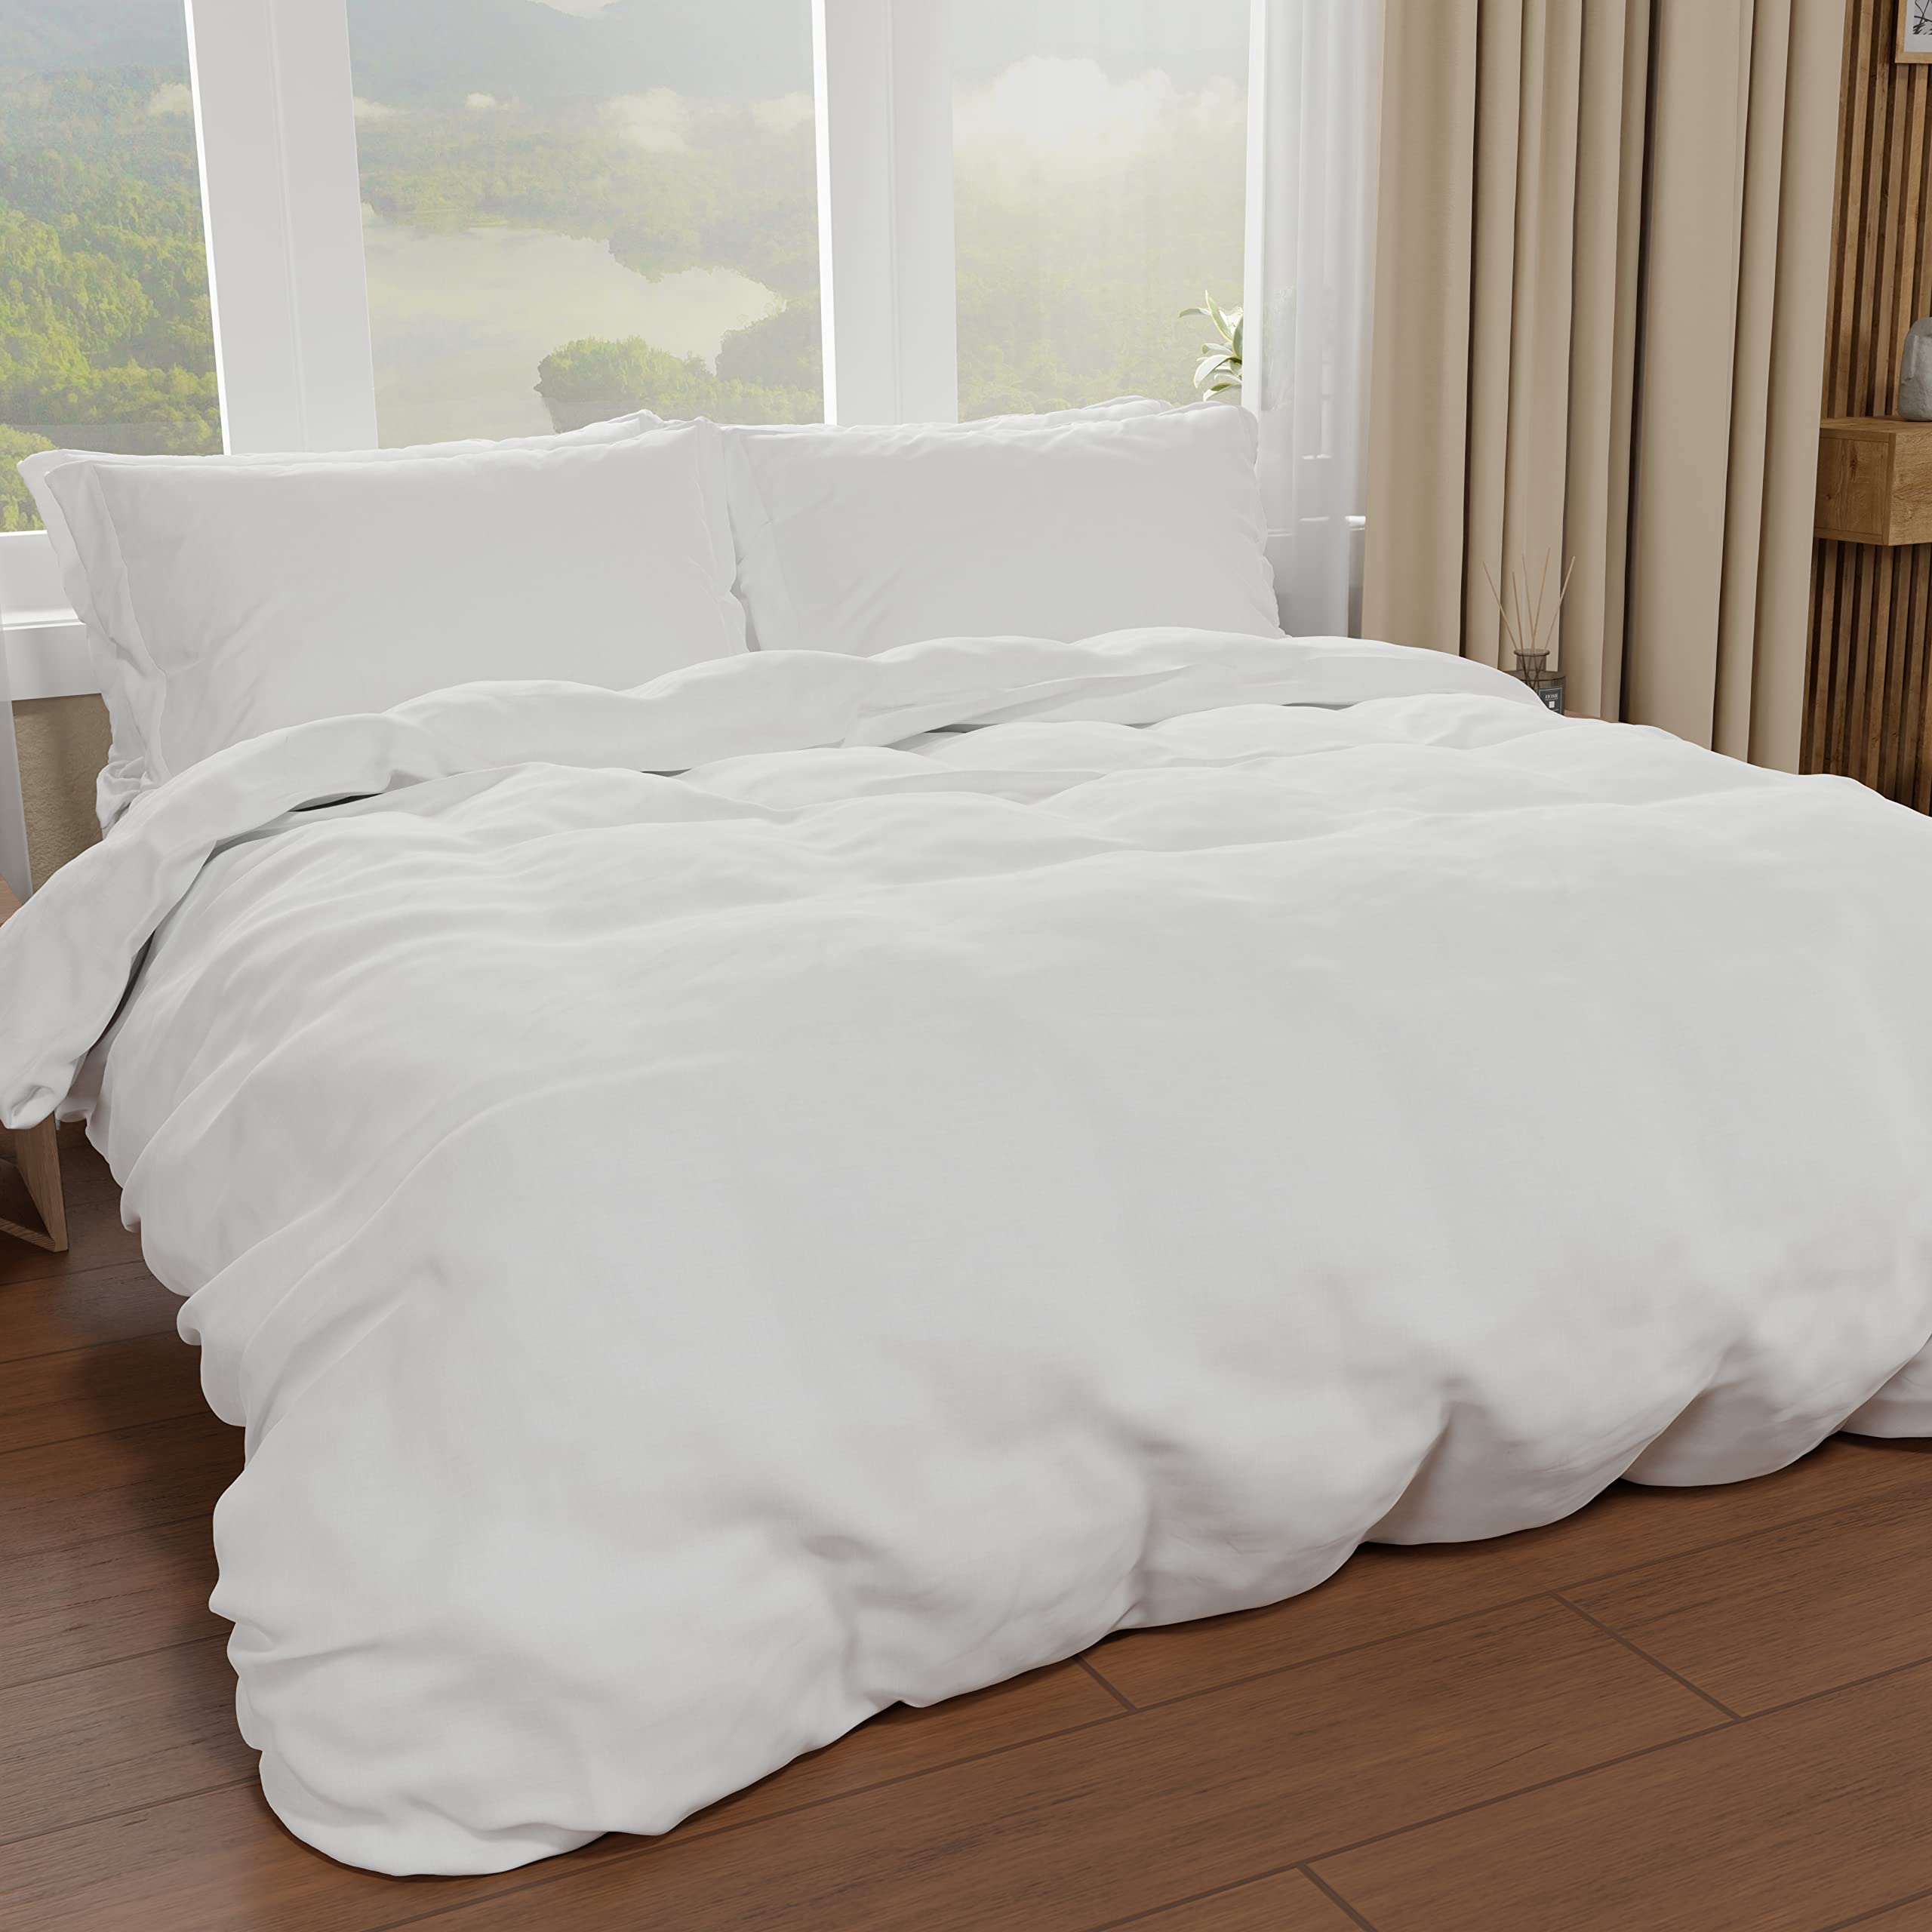 PETTI Artigiani Italiani - Bettbezug für Einzelbett, Bettbezug und Kissenbezüge aus Mikrofaser, einfarbig weiß, 100% Made in Italy